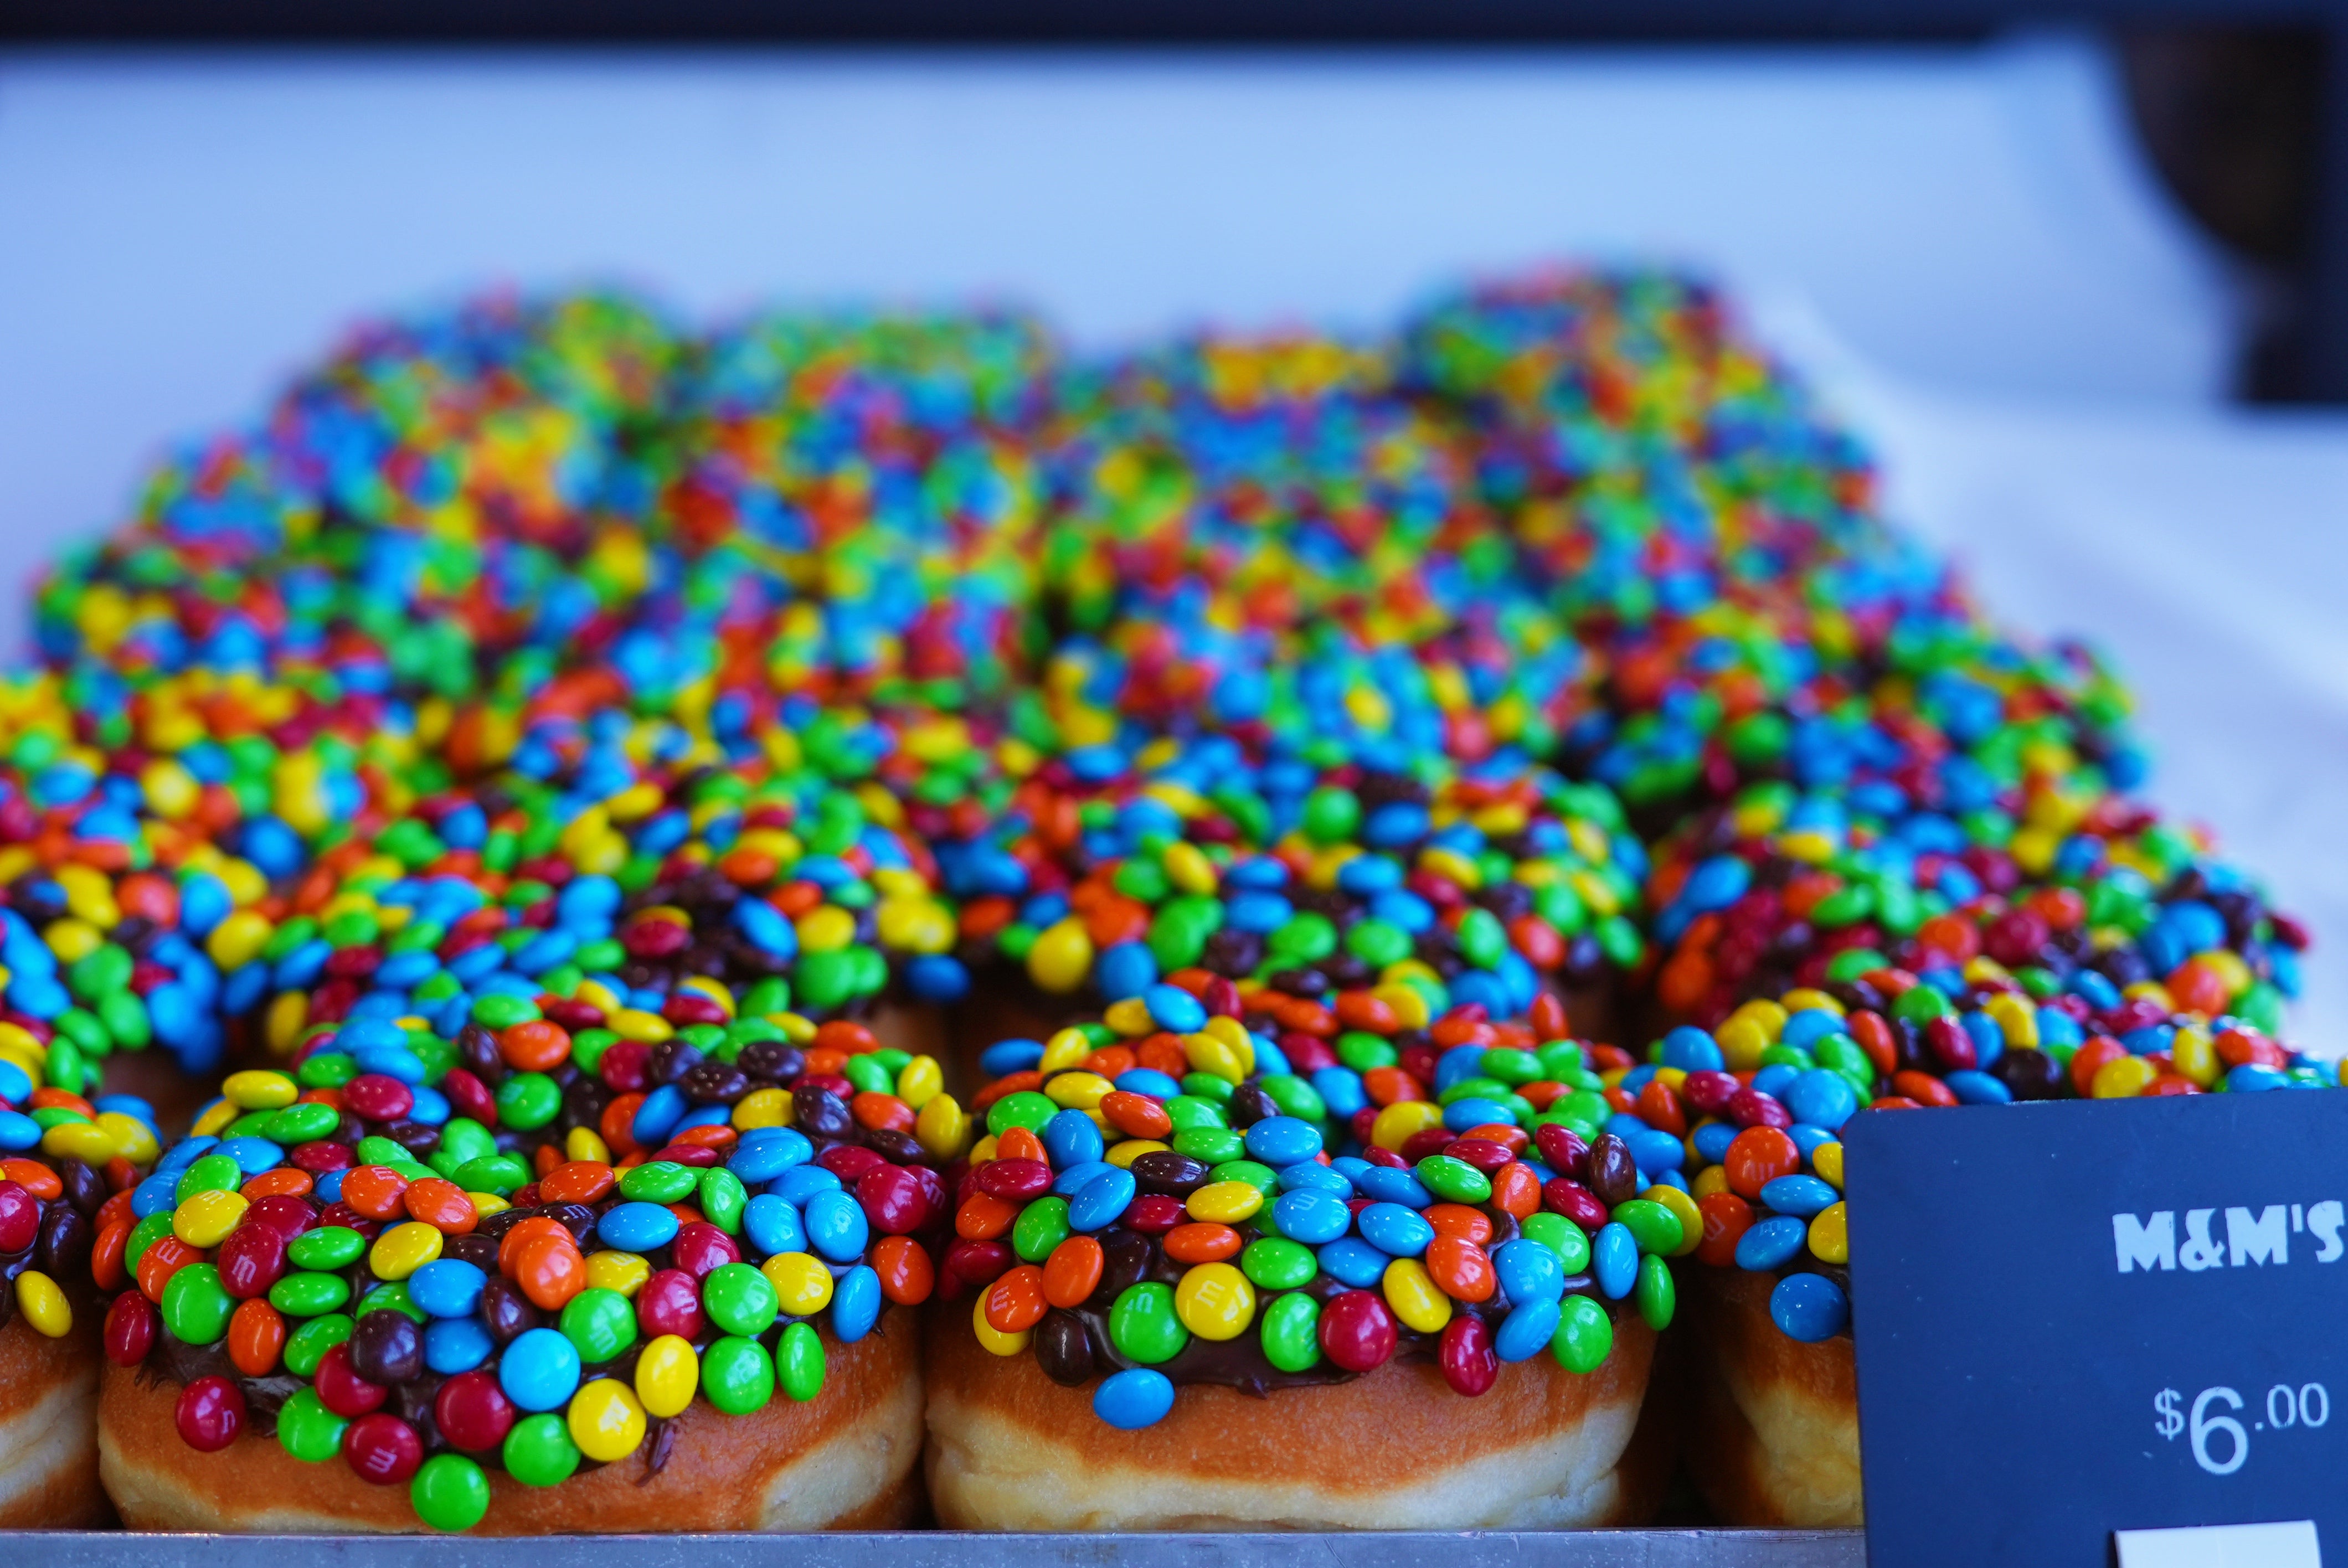 L.A Donuts